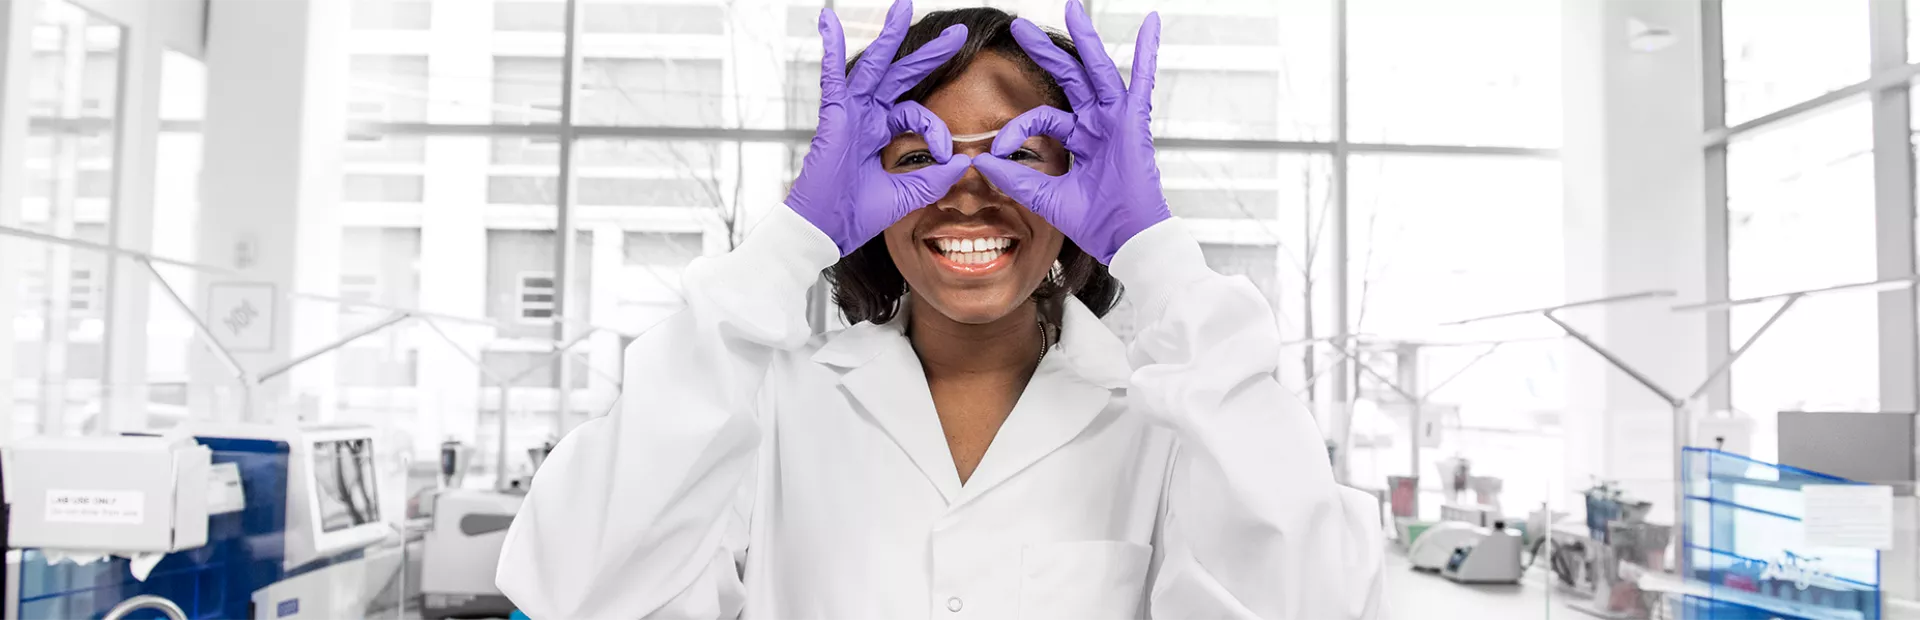 Wissenschaftlerin formt mit ihren Händen eine Brille